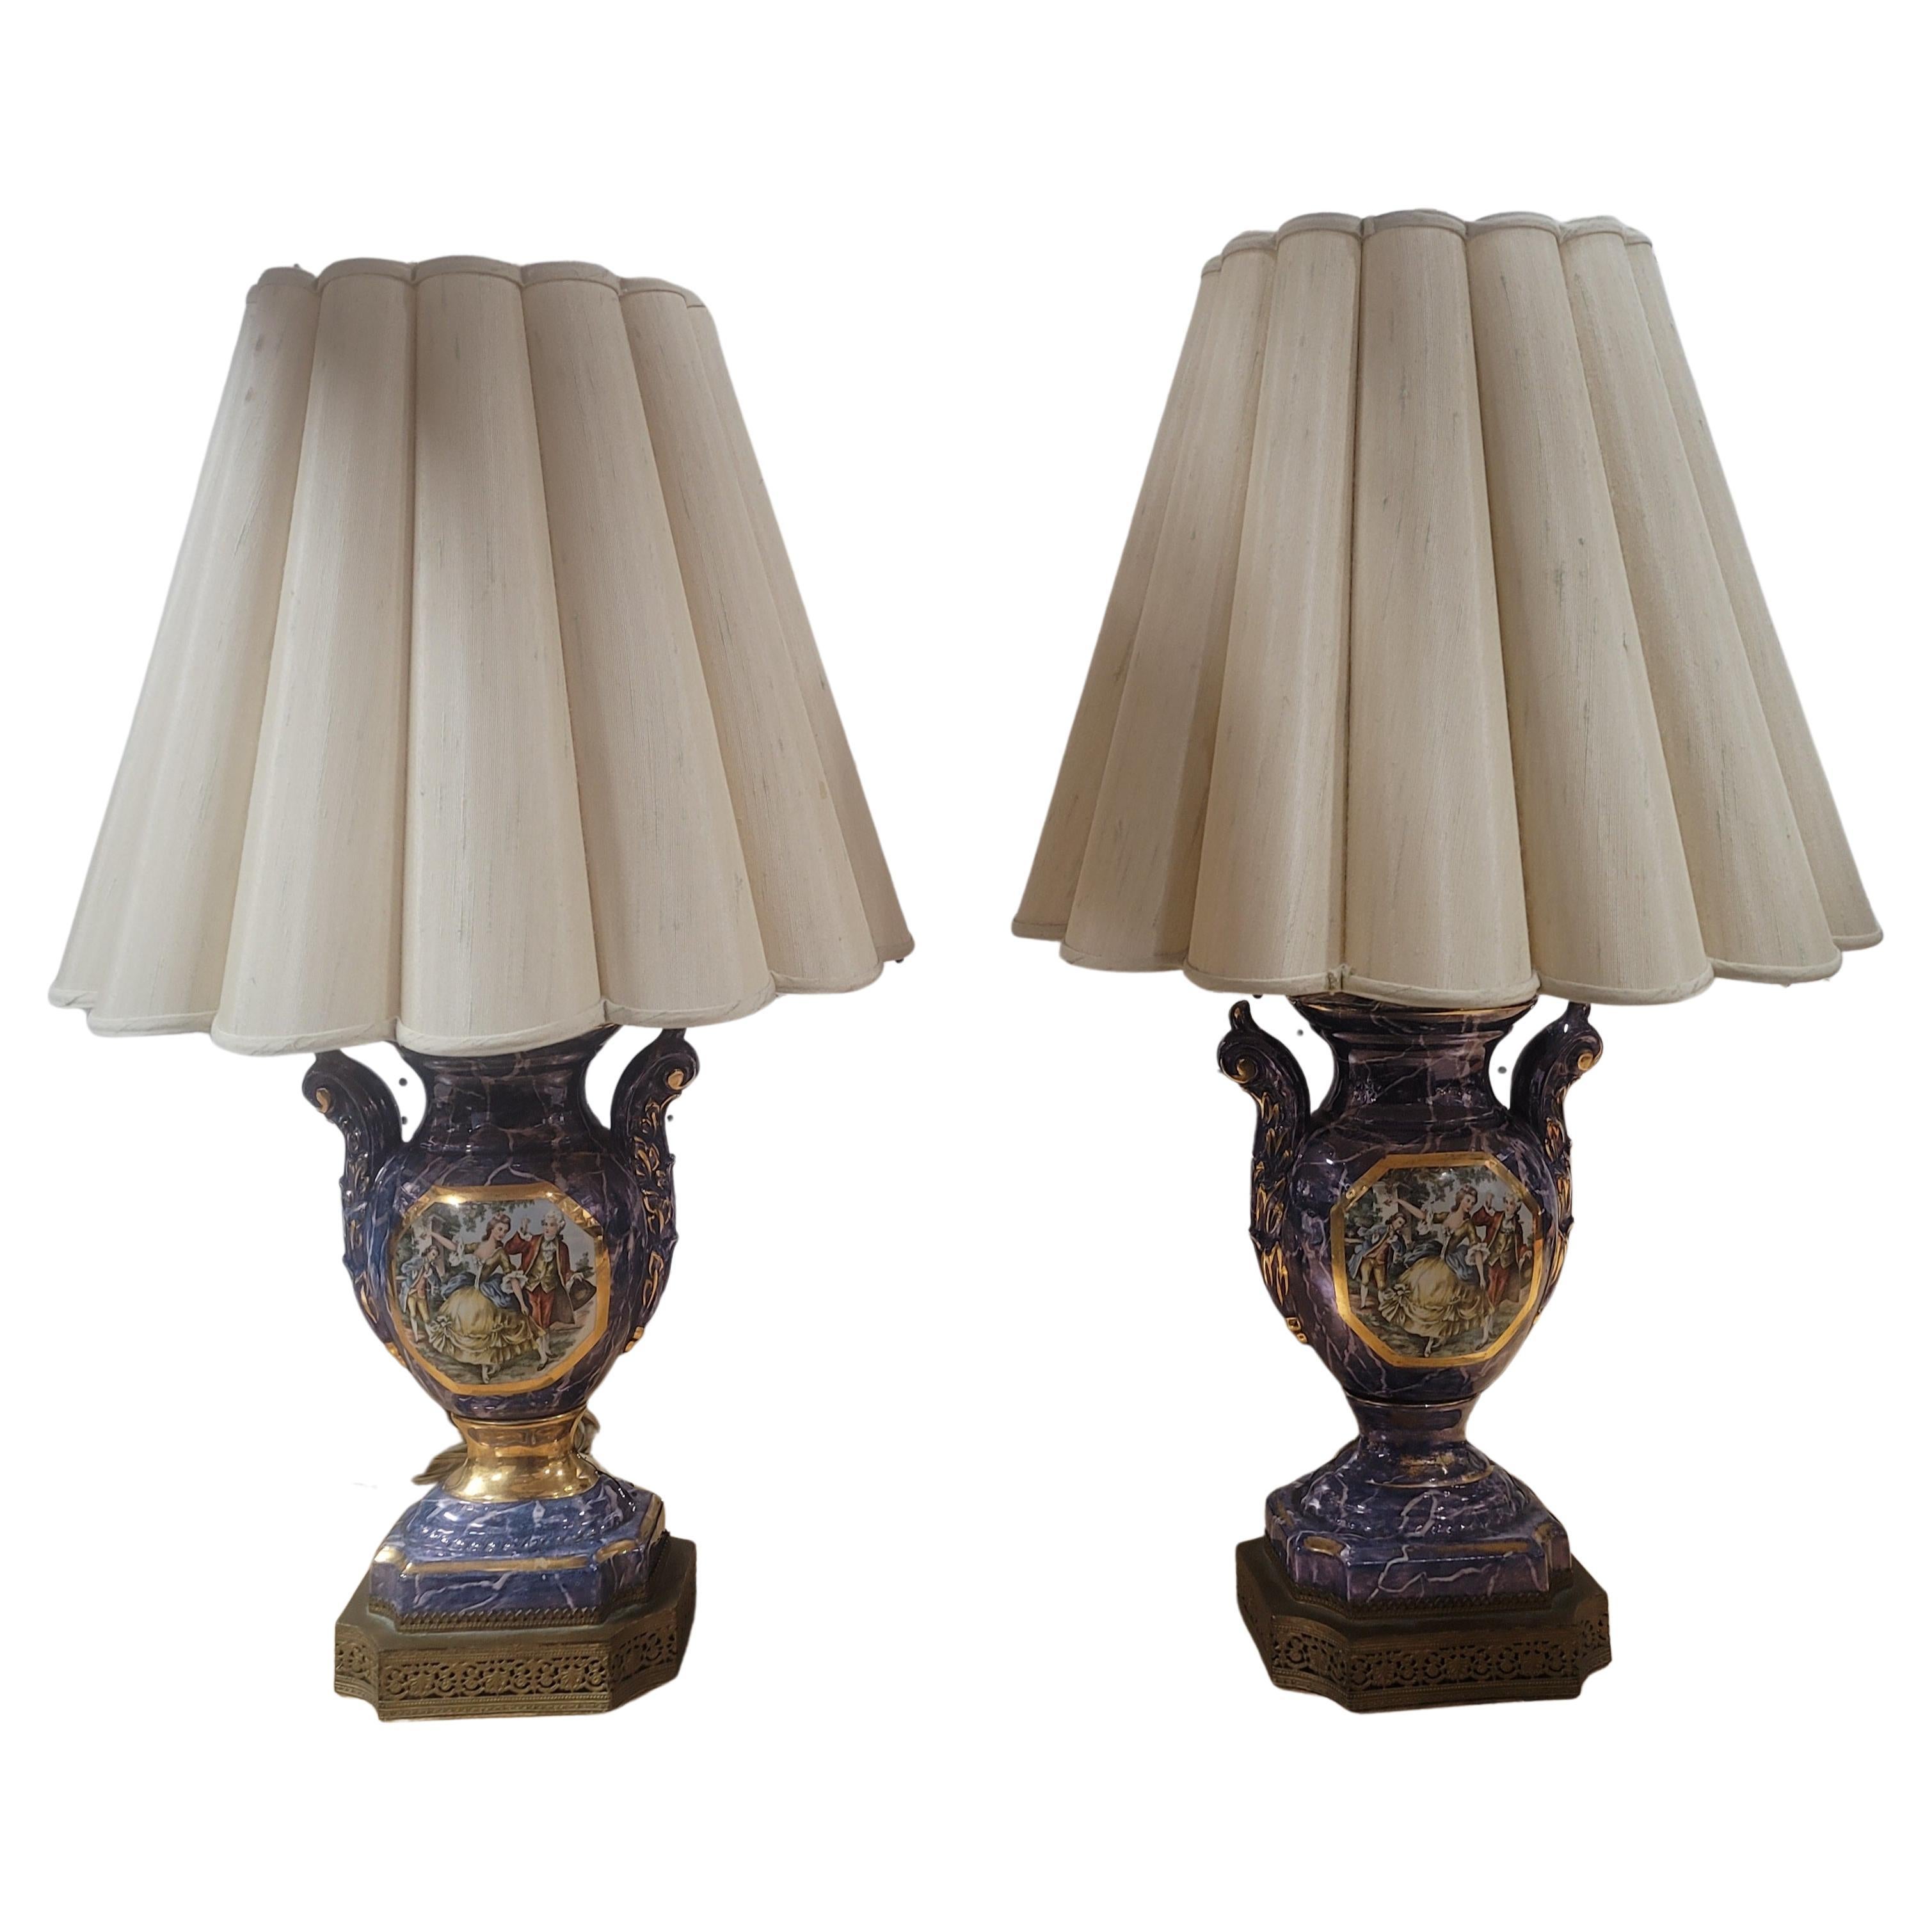 Une élégante paire de lampes en porcelaine de style Louis XVI Sèvres du 19ème siècle. Chaque lampe est surélevée par une base mouchetée décorée d'une fine enveloppe en laiton. Au-dessus des piédestaux en forme de socle, les corps en forme d'urne